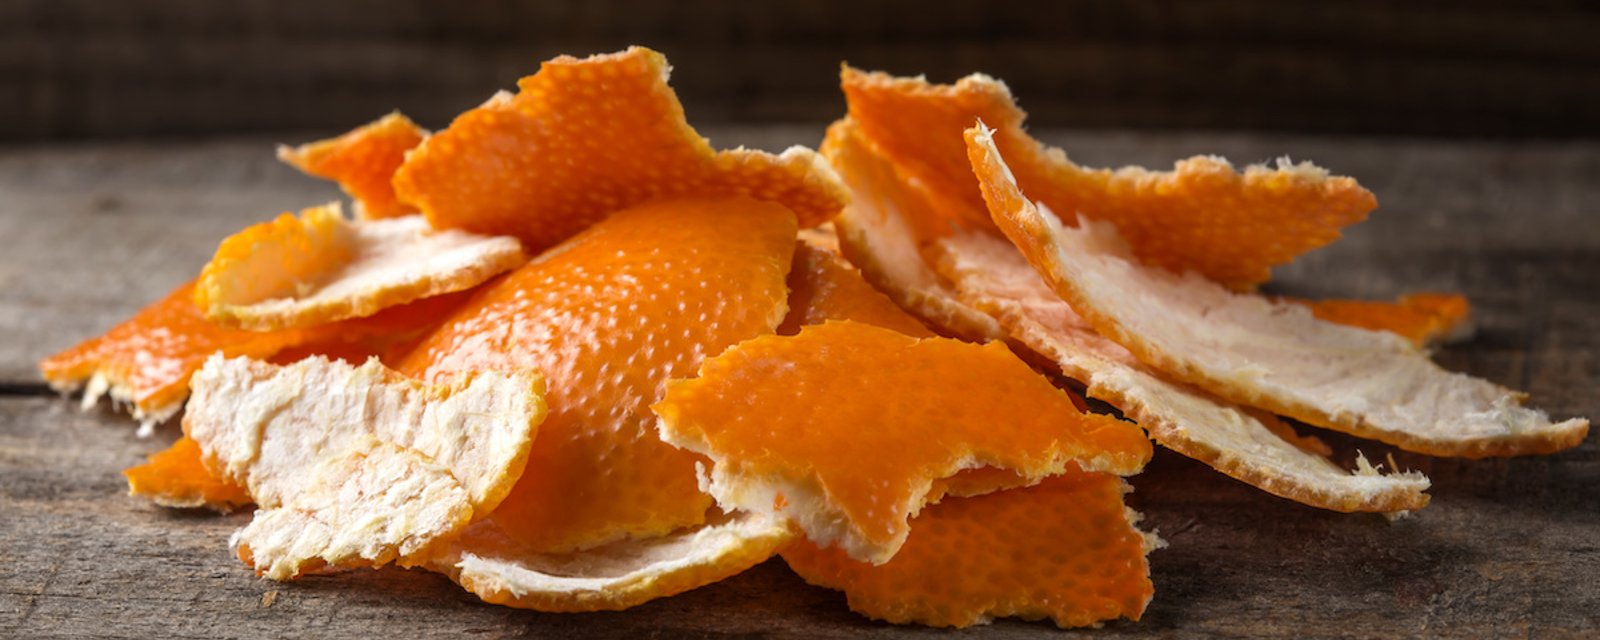 12 façons de récupérer des pelures d'orange